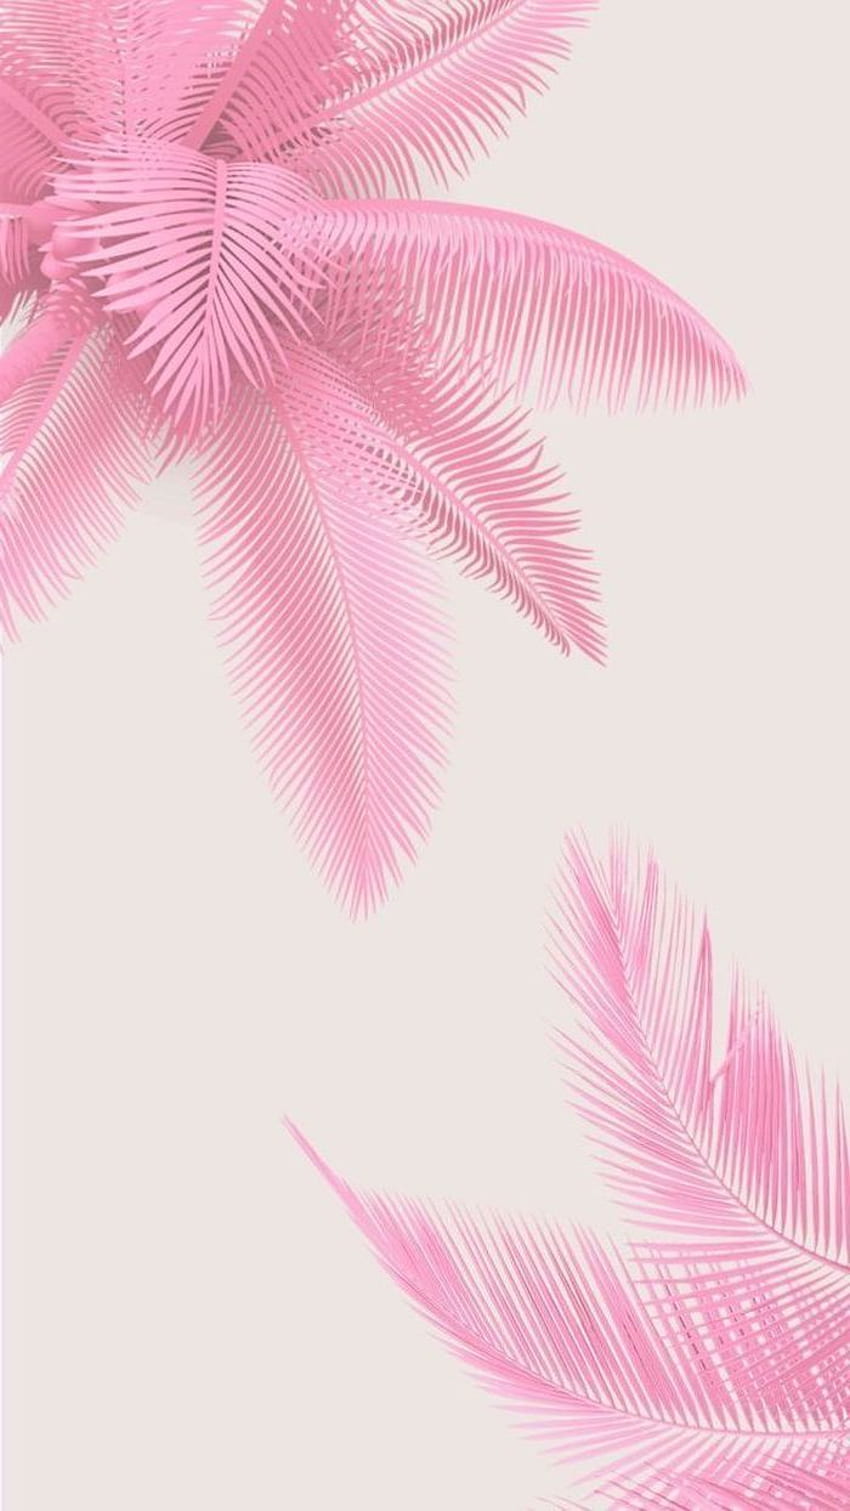 Một hình nền màu hồng với họa tiết lá cọ đang là xu hướng hot nhất hiện nay. Những thiết kế độc đáo và tinh tế sẽ mang đến cho bạn một trải nghiệm thật độc đáo và thú vị.